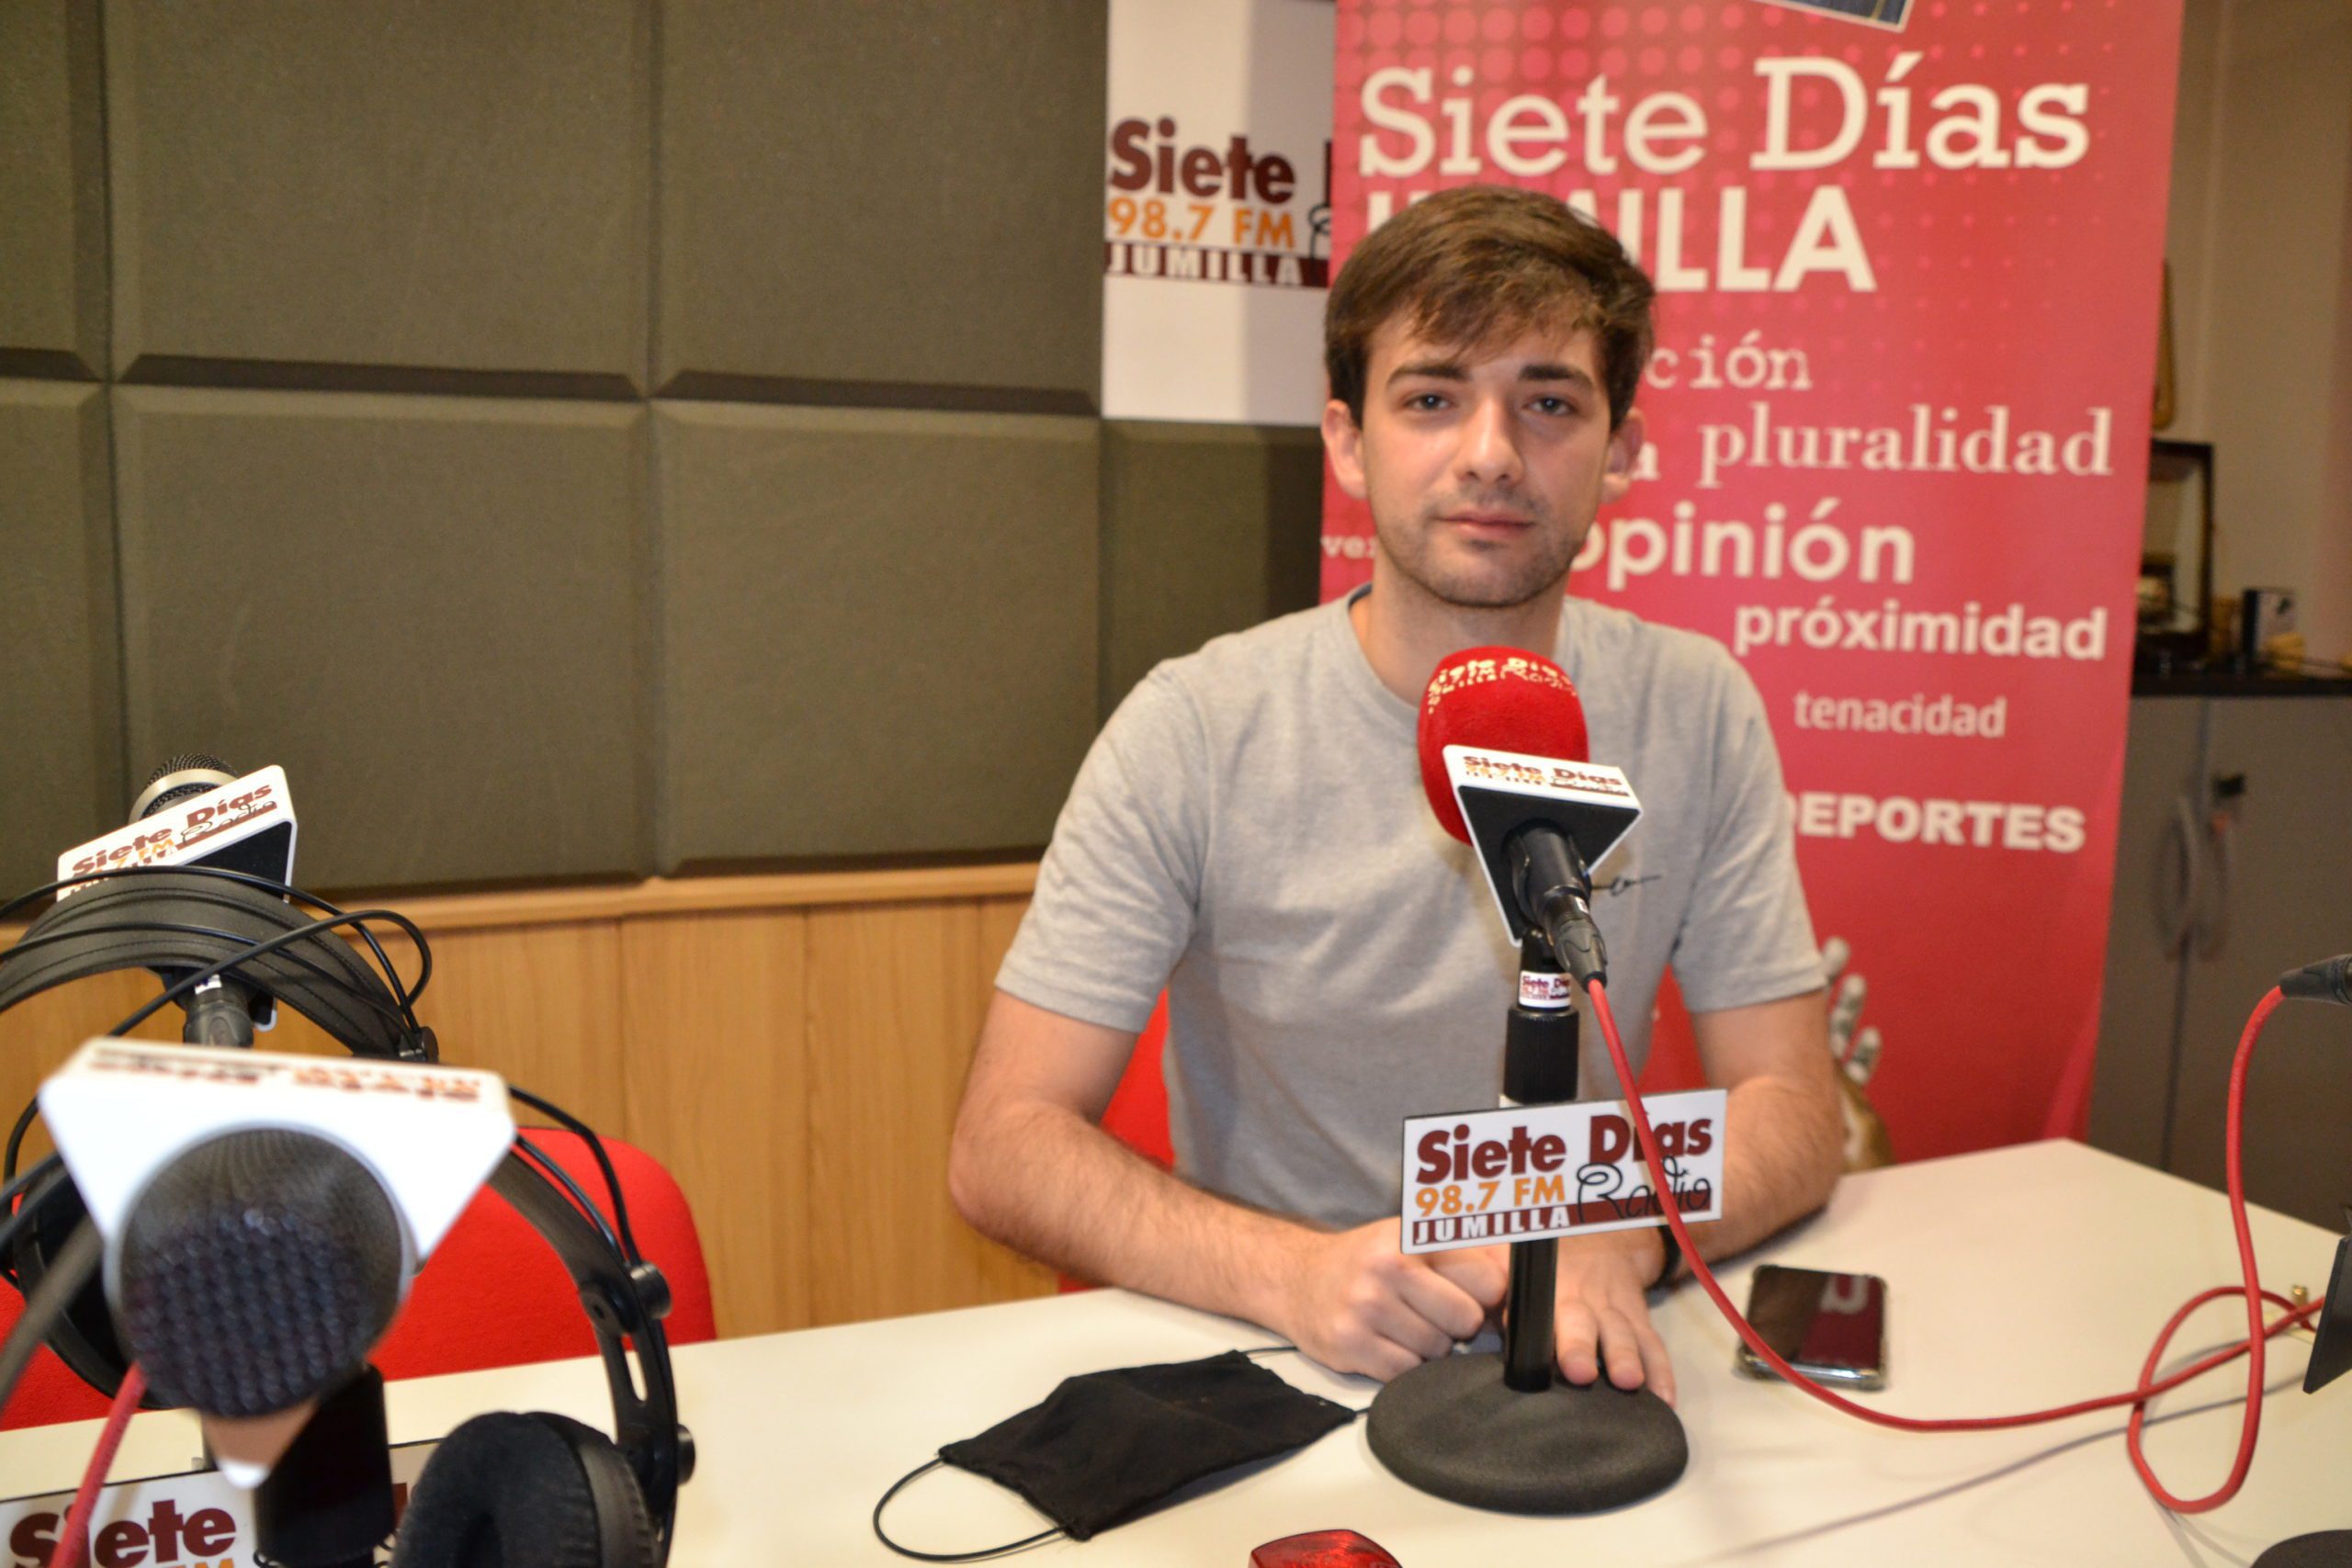 El joven Raúl Pérez presenta ‘Dronport’ a dos concursos, uno regional y otro nacional